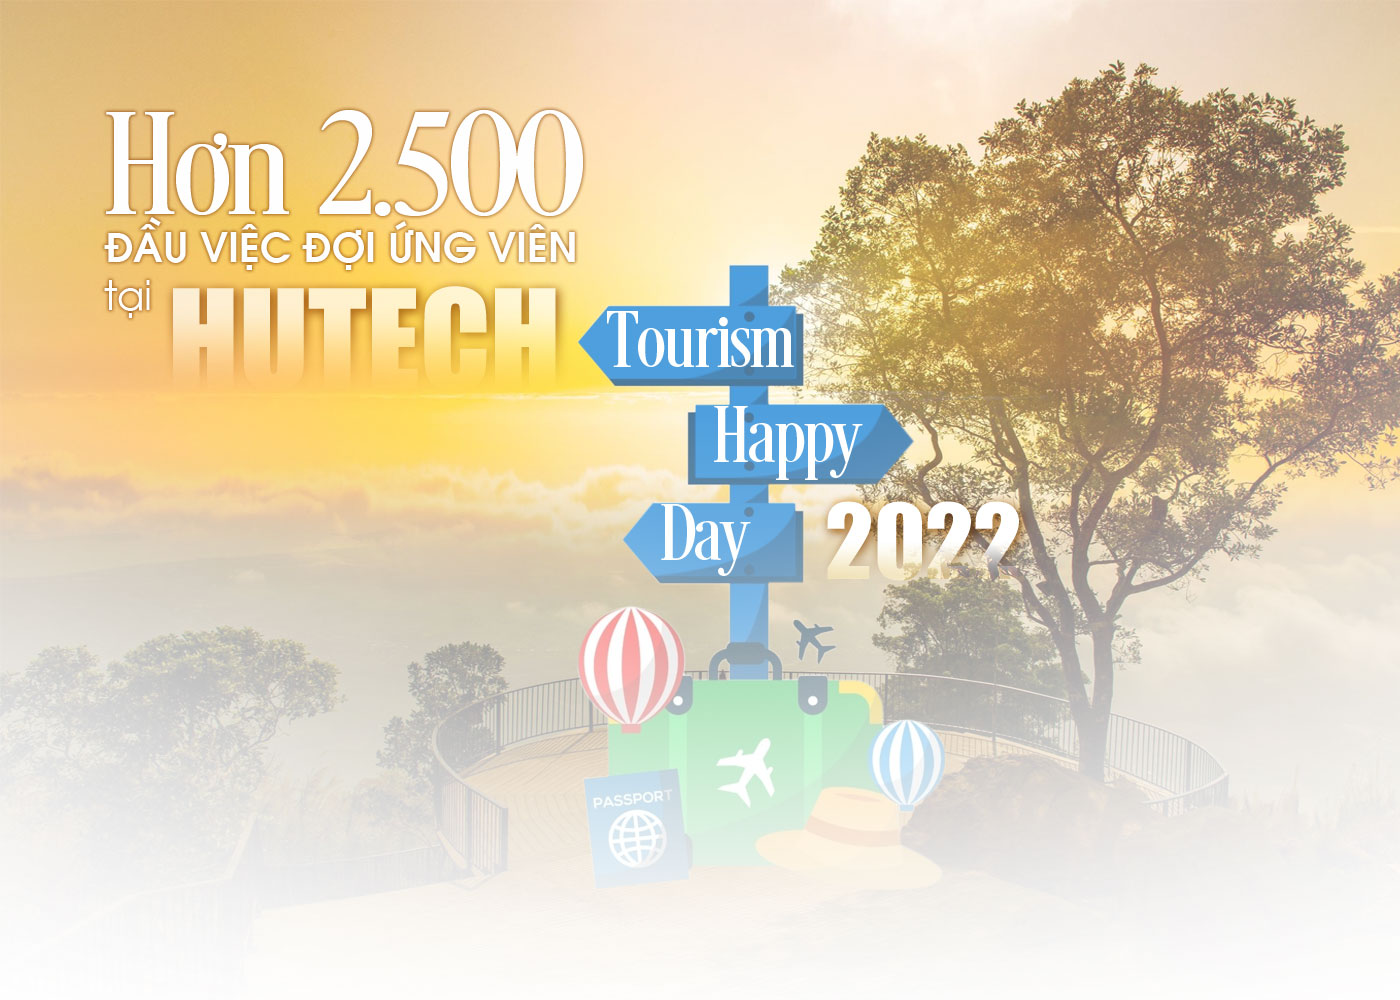 Hơn 2.500 đầu việc đợi ứng viên tại HUTECH Tourism Happy Day 2022 - Ảnh 1